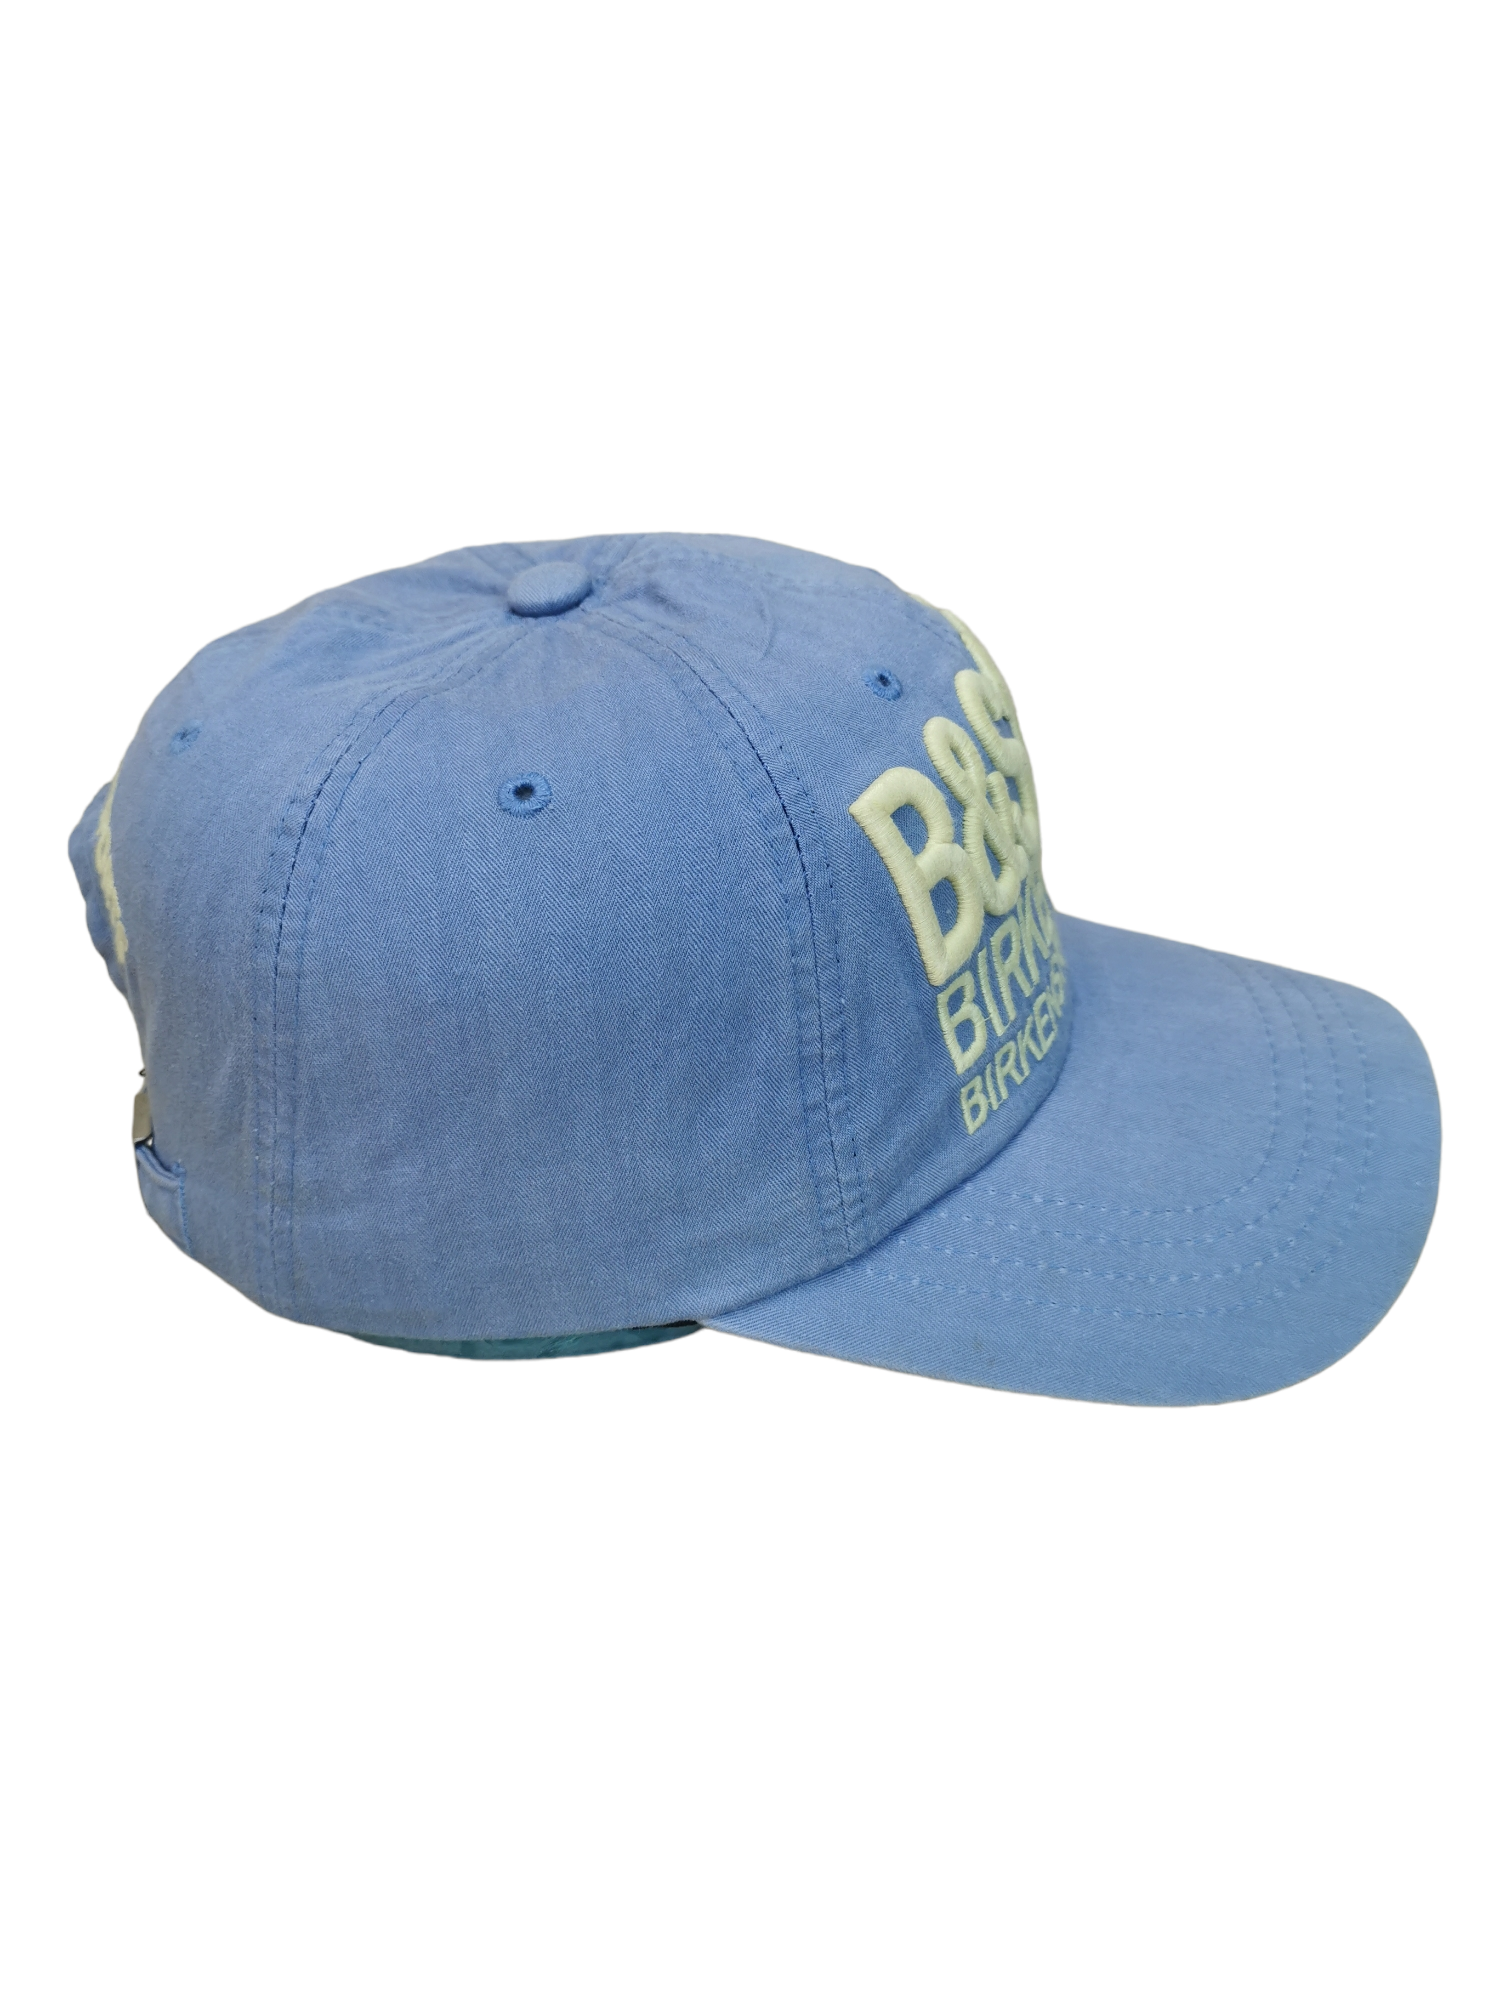 BIRKENSTOCK BRAND STREETWEAR HAT CAP - 4